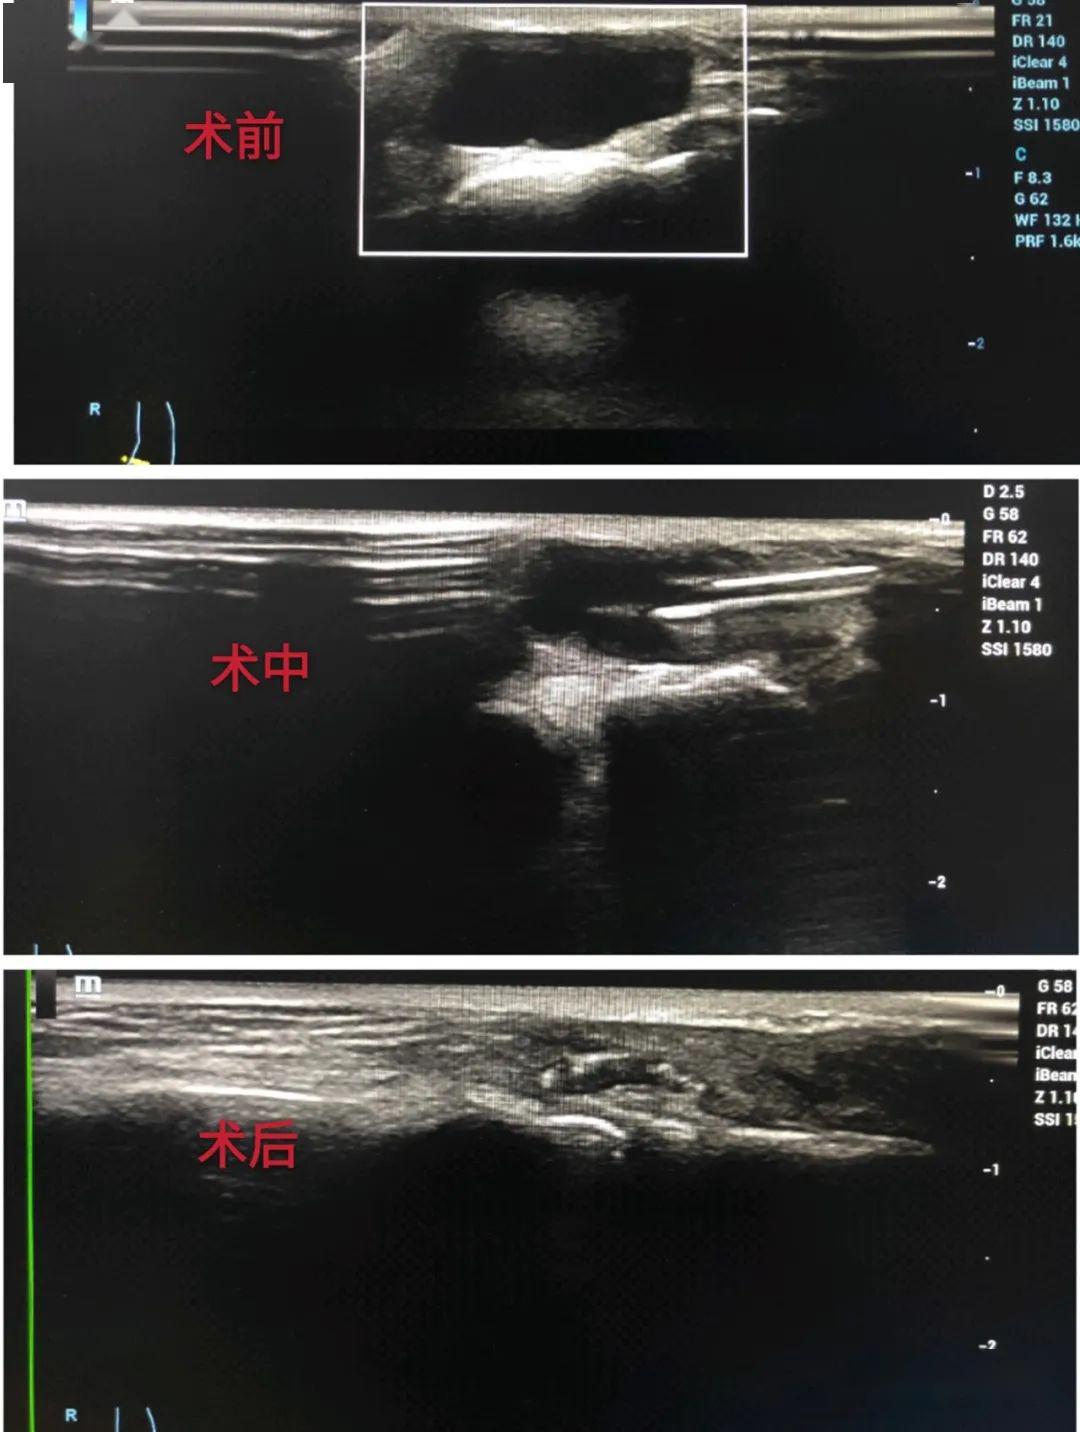 患者李某,女,右足背包块,彩超提示为腱鞘囊肿,如下图箭头所示其优点有